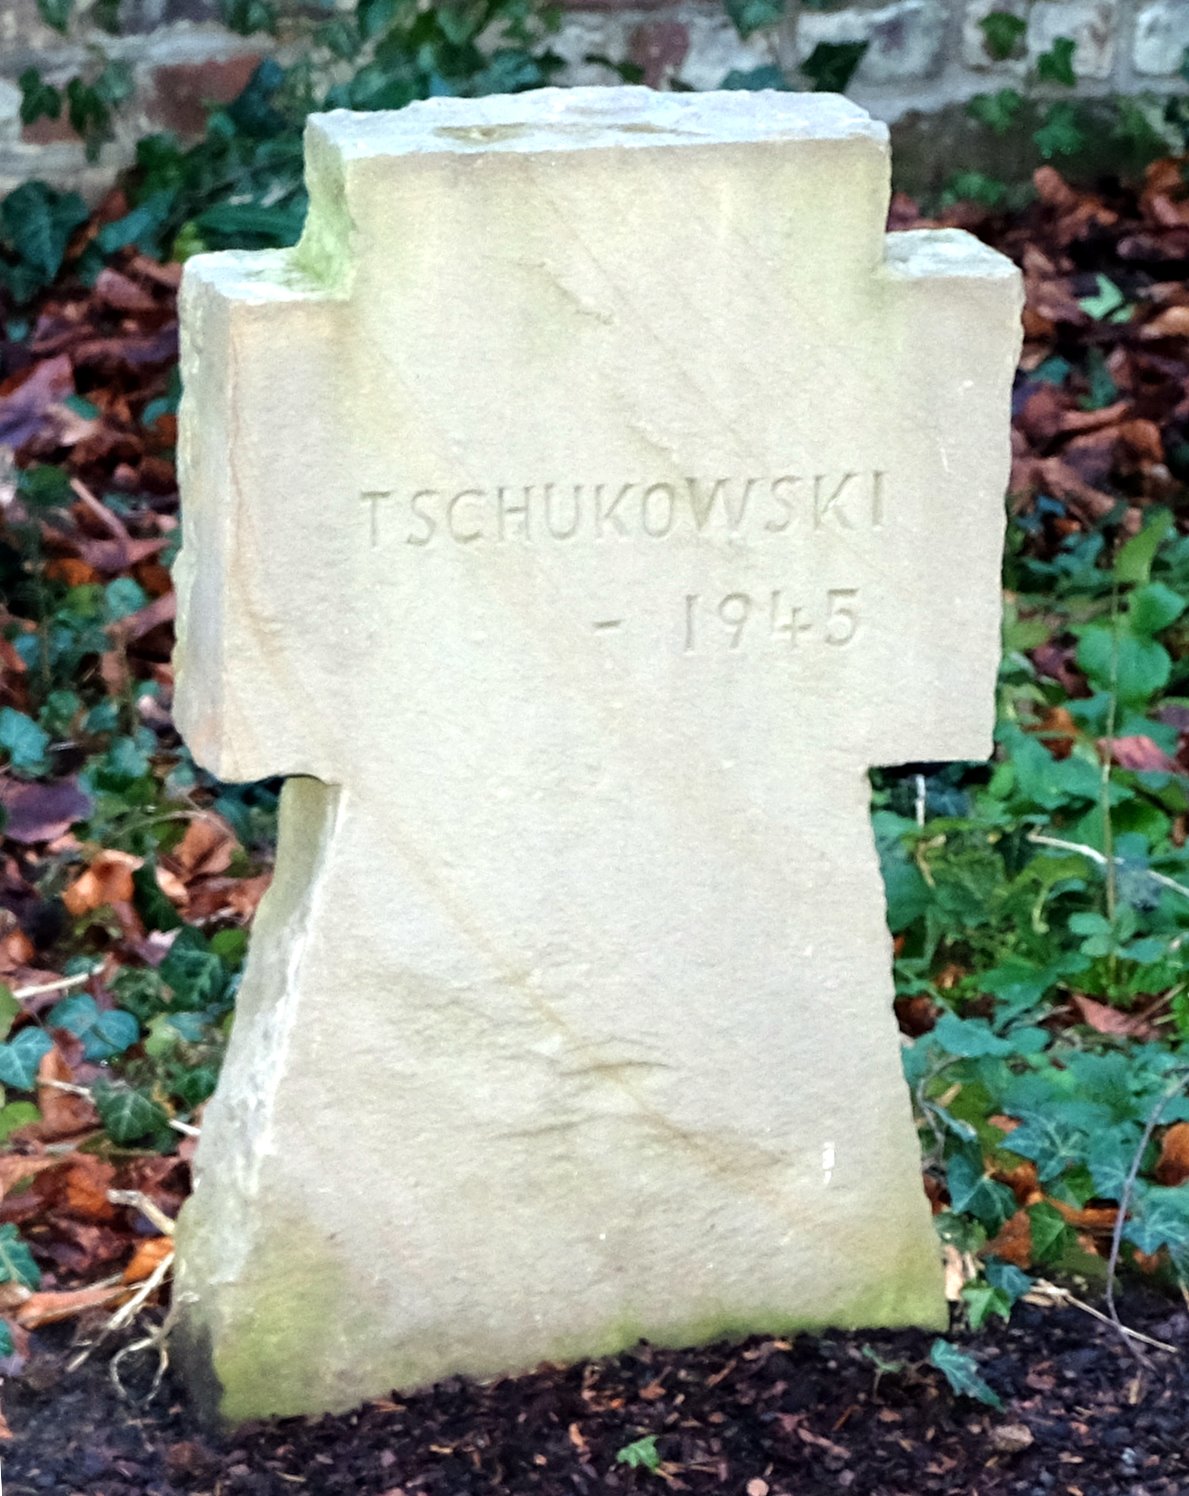 Tschukowski